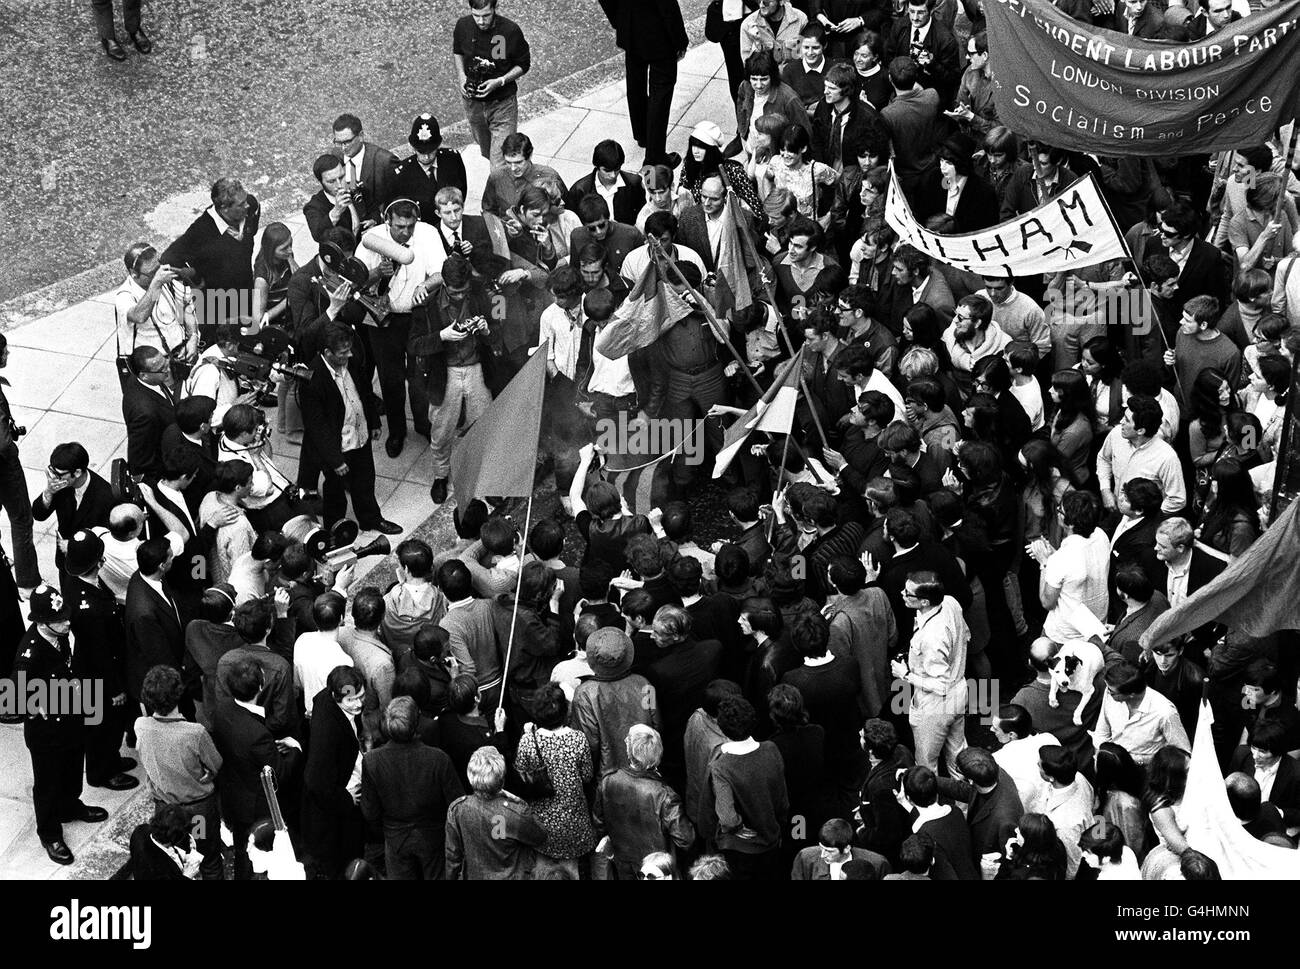 Politik - Proteste Gegen Vietnam - Grosvenor Square, London. Während einer Demonstration gegen den Krieg in Vietnam wird auf dem Grosvenor Square in London eine Fahne verbrannt. Stockfoto